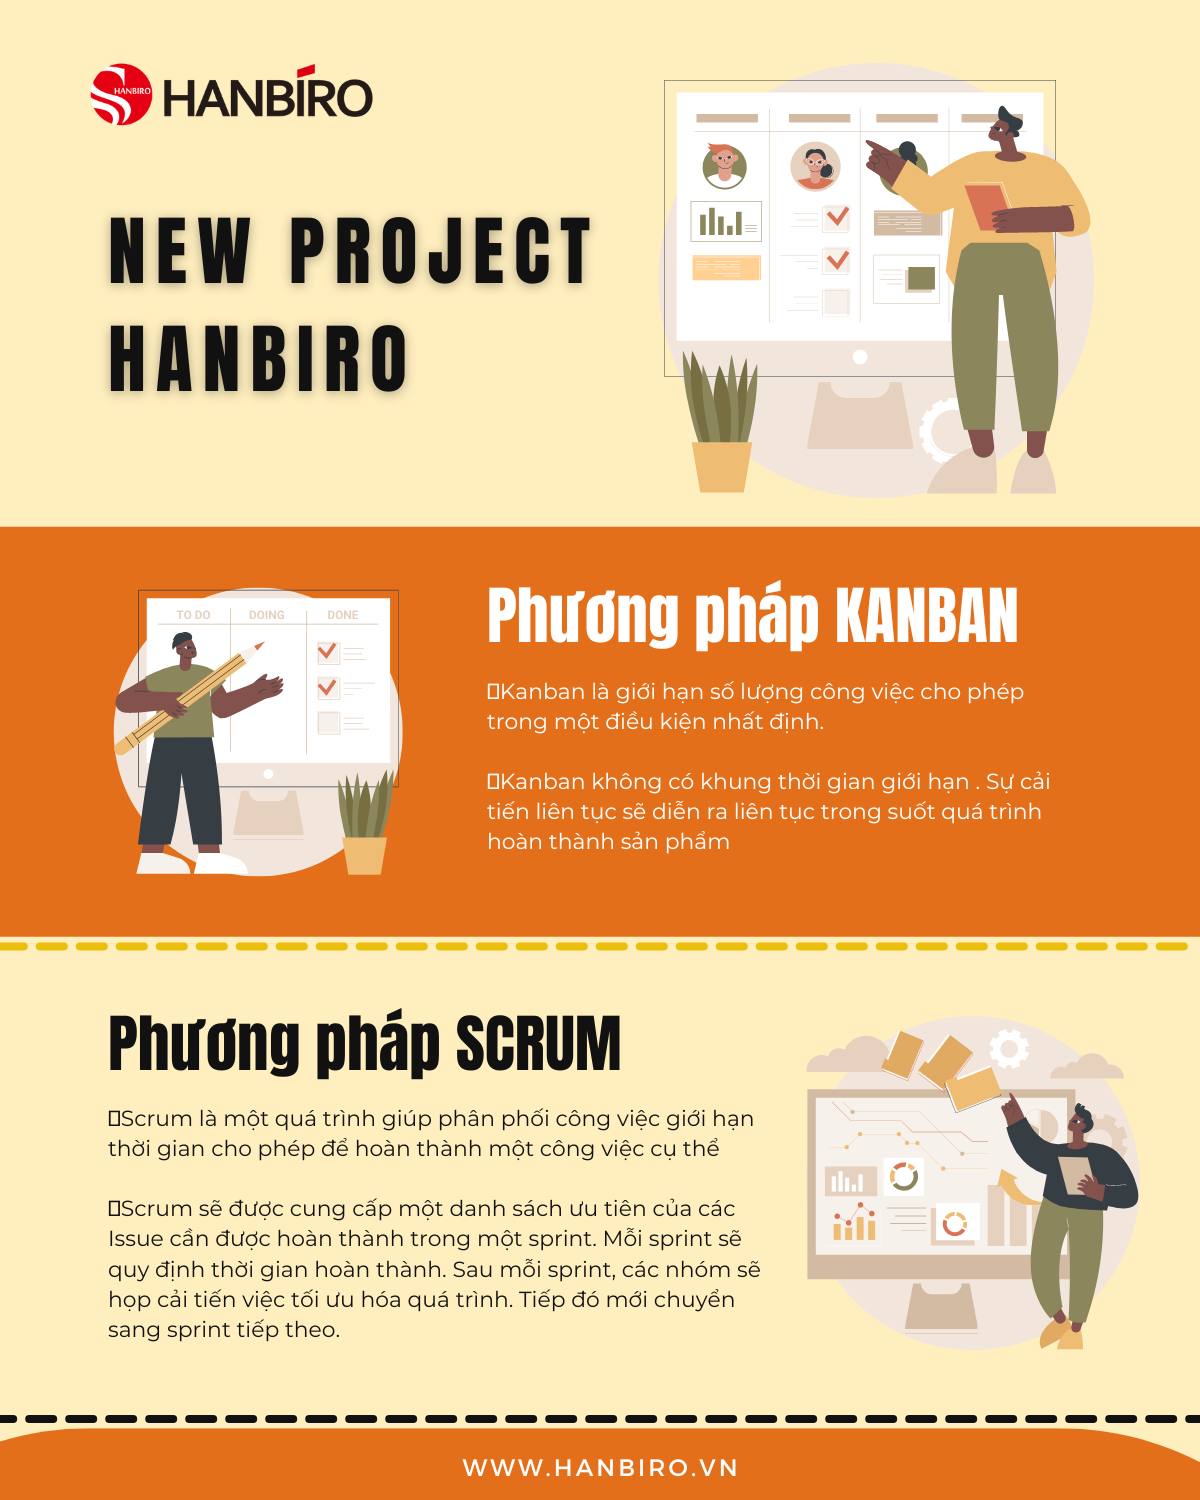 Hanbiro - Quản lý dự án hiệu quả với phương pháp Kanban